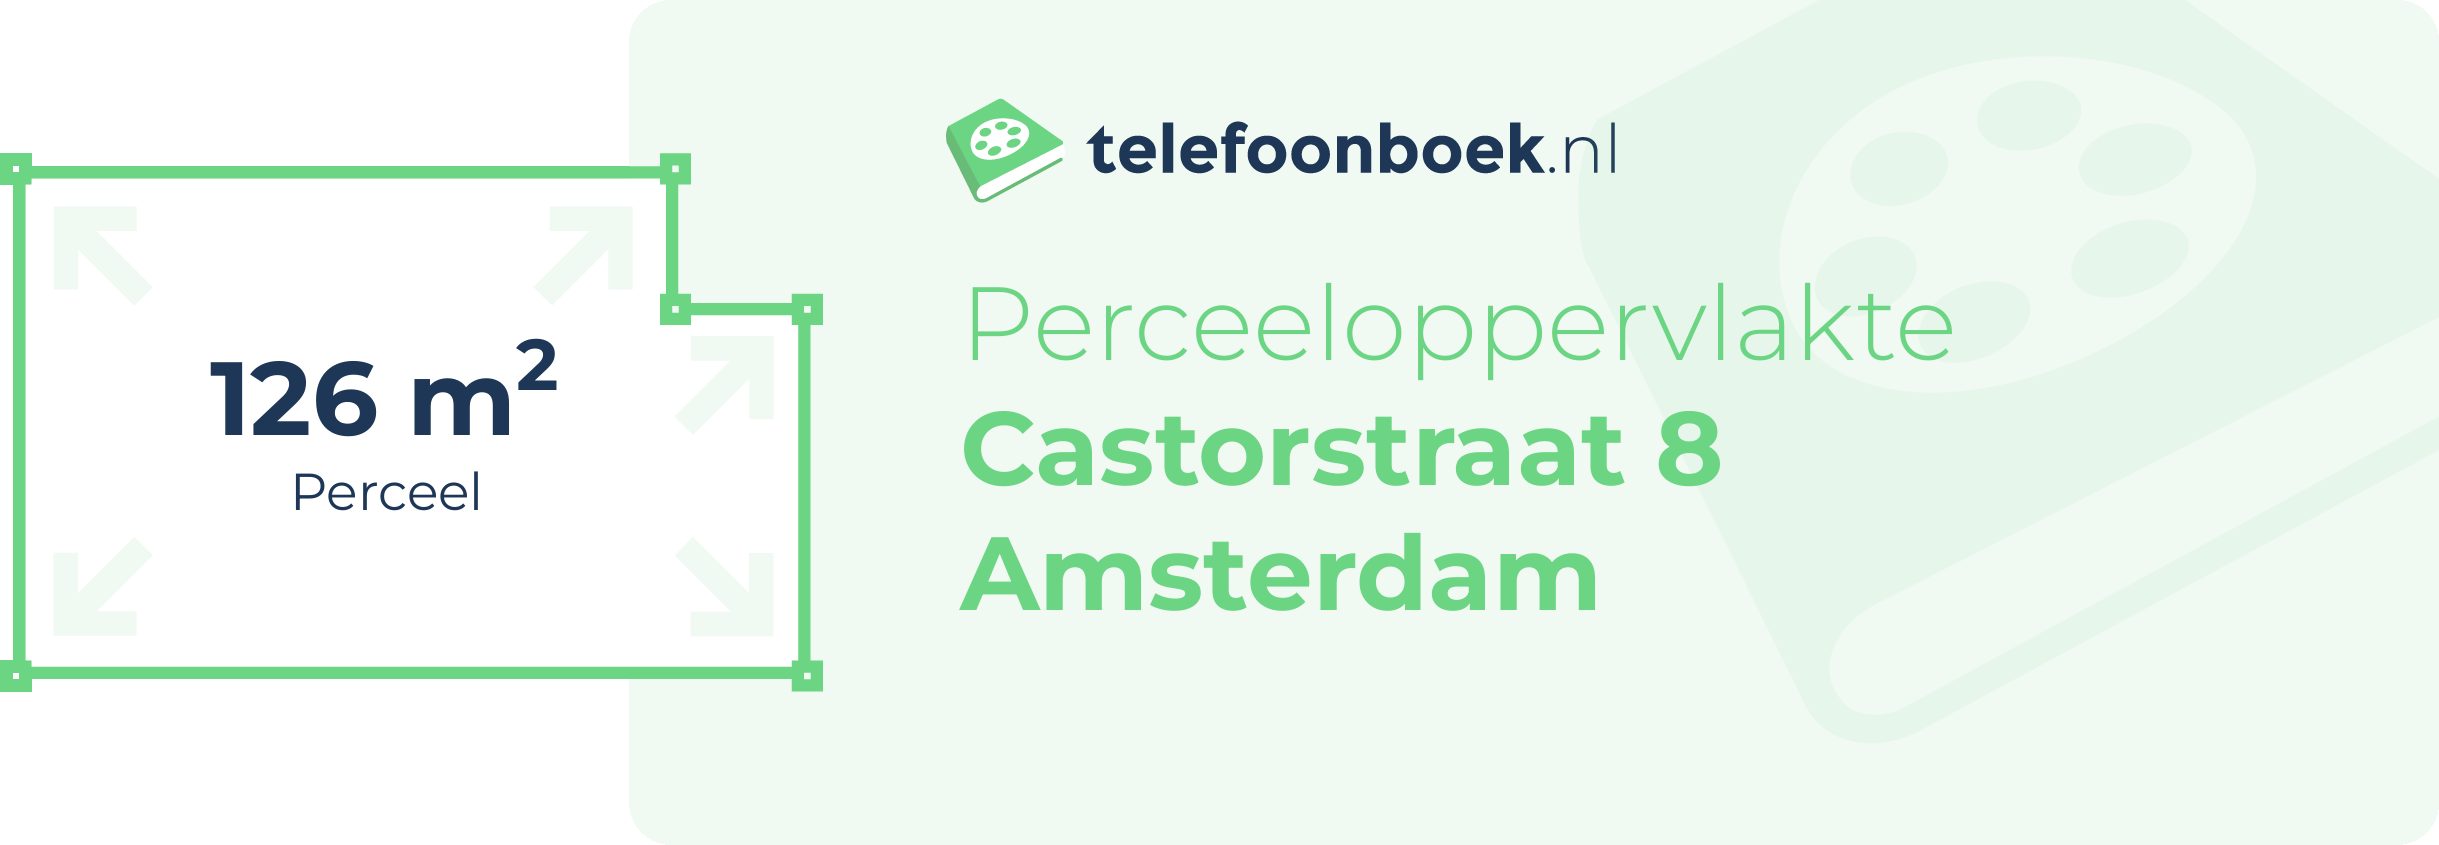 Perceeloppervlakte Castorstraat 8 Amsterdam